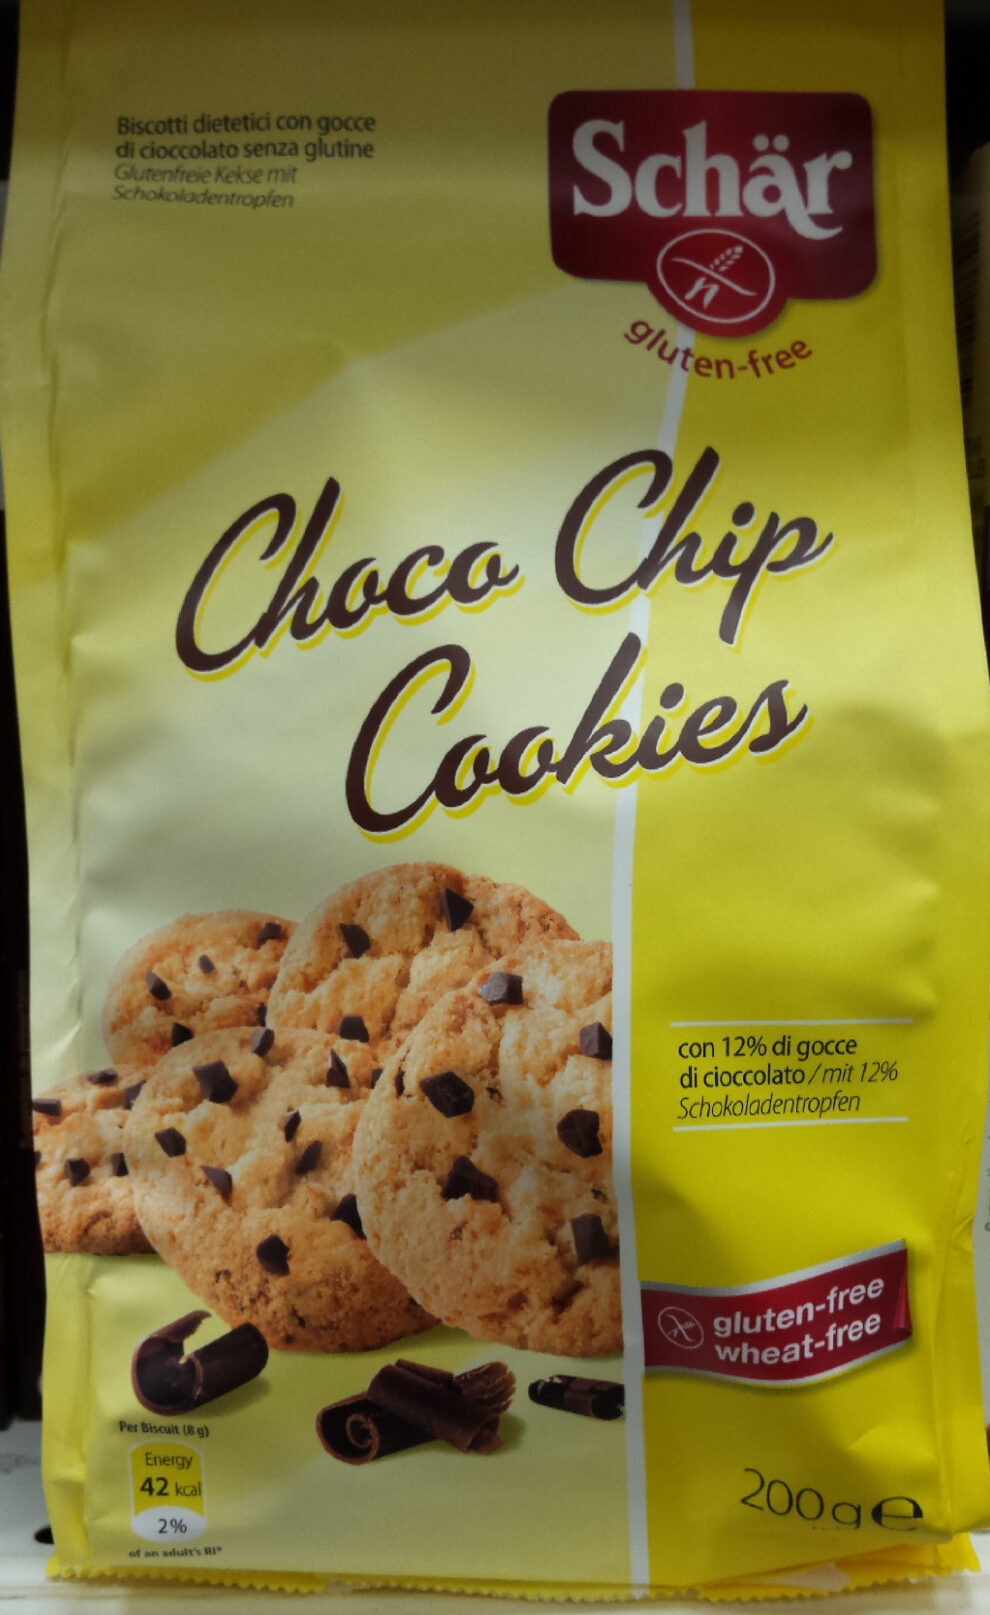 Choco chip cookies gluten free - Produkt